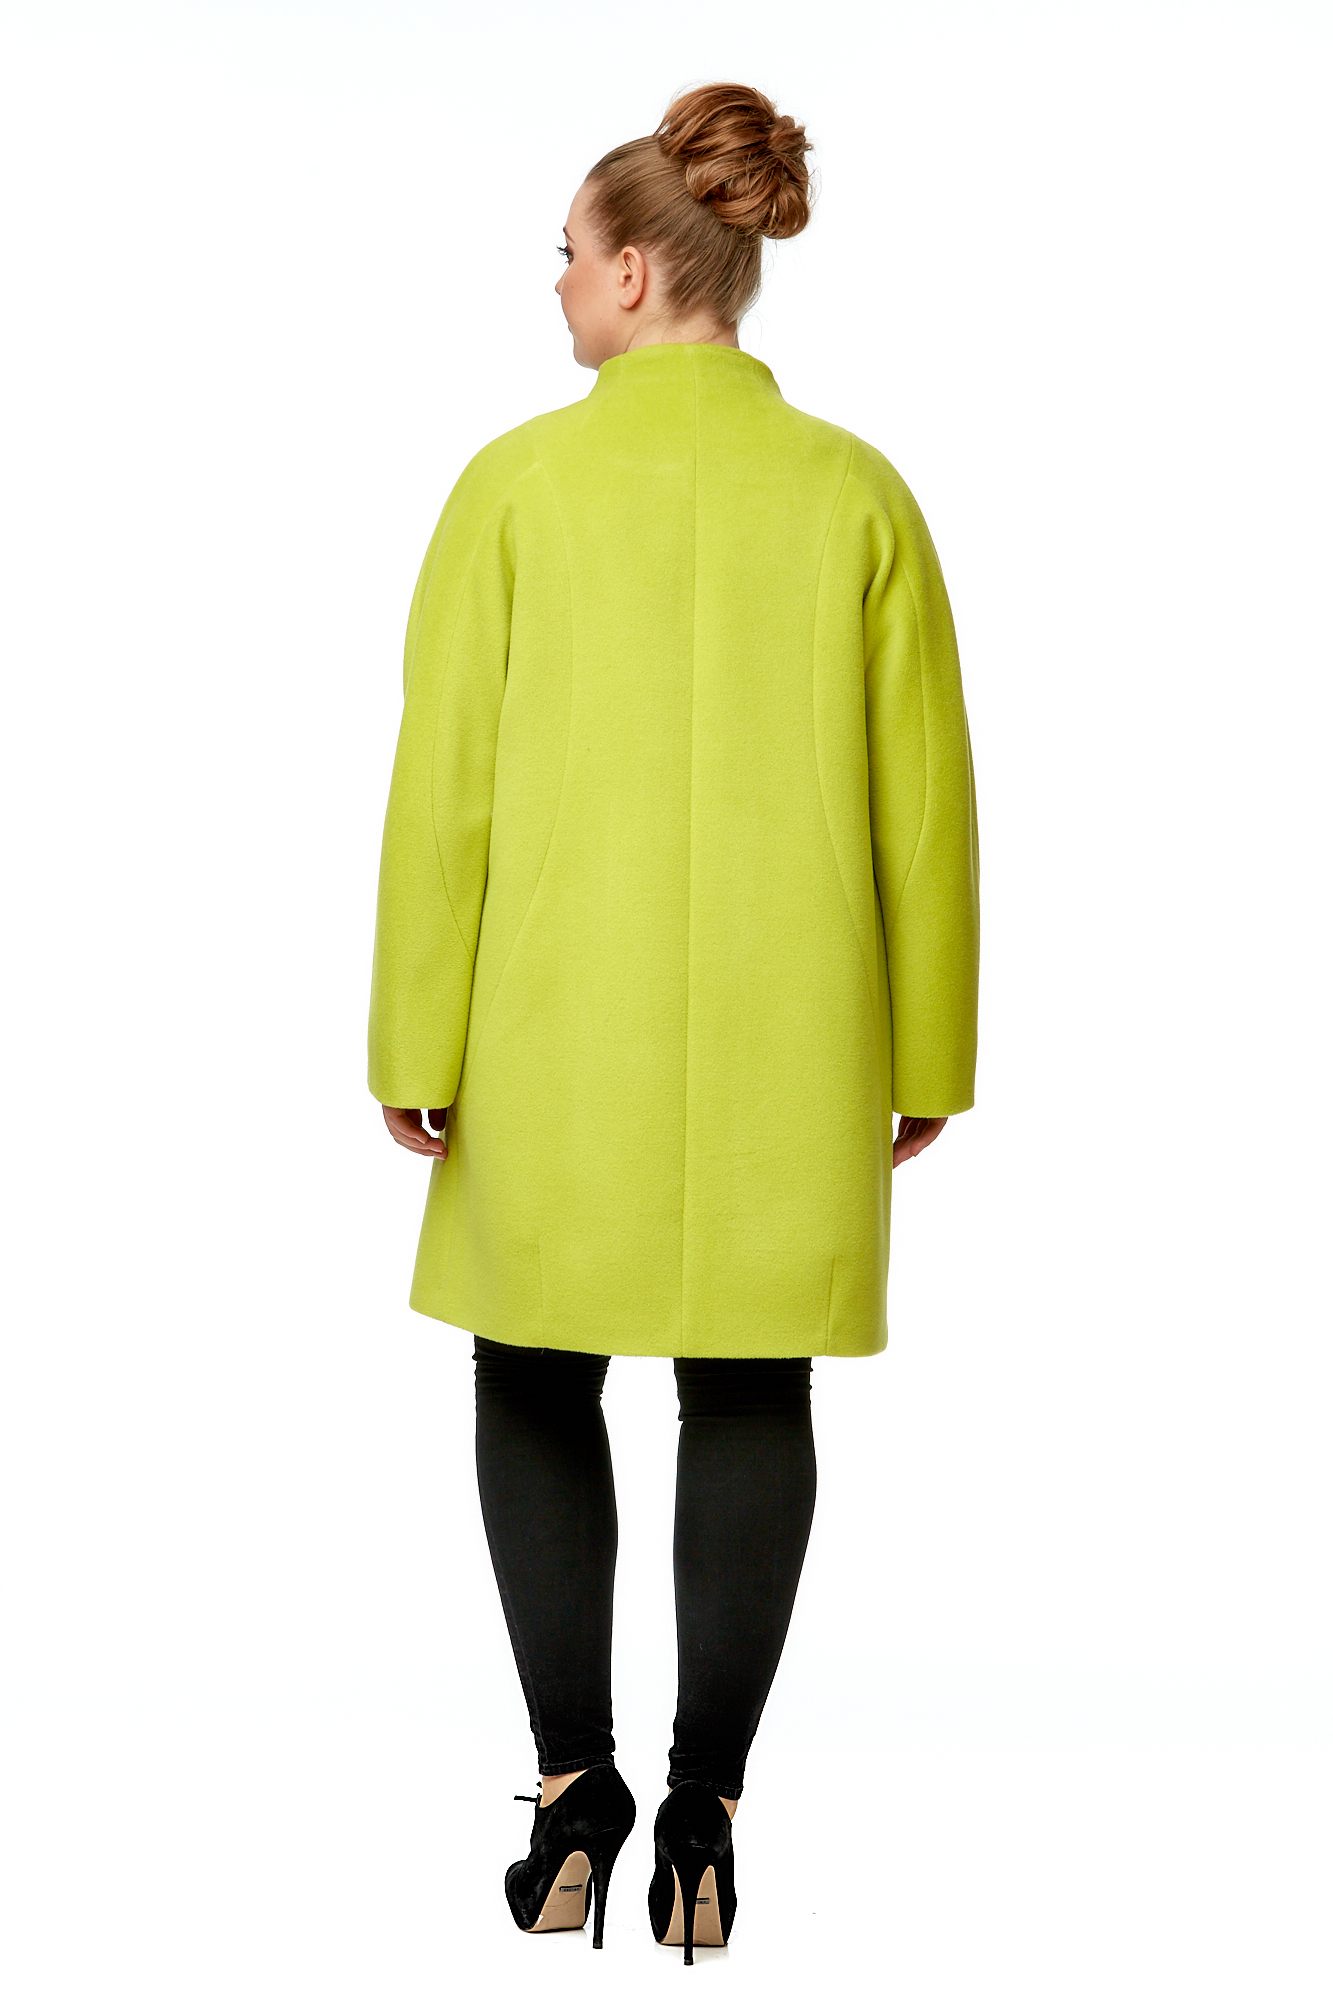 Женское пальто из текстиля с воротником 8002627-2